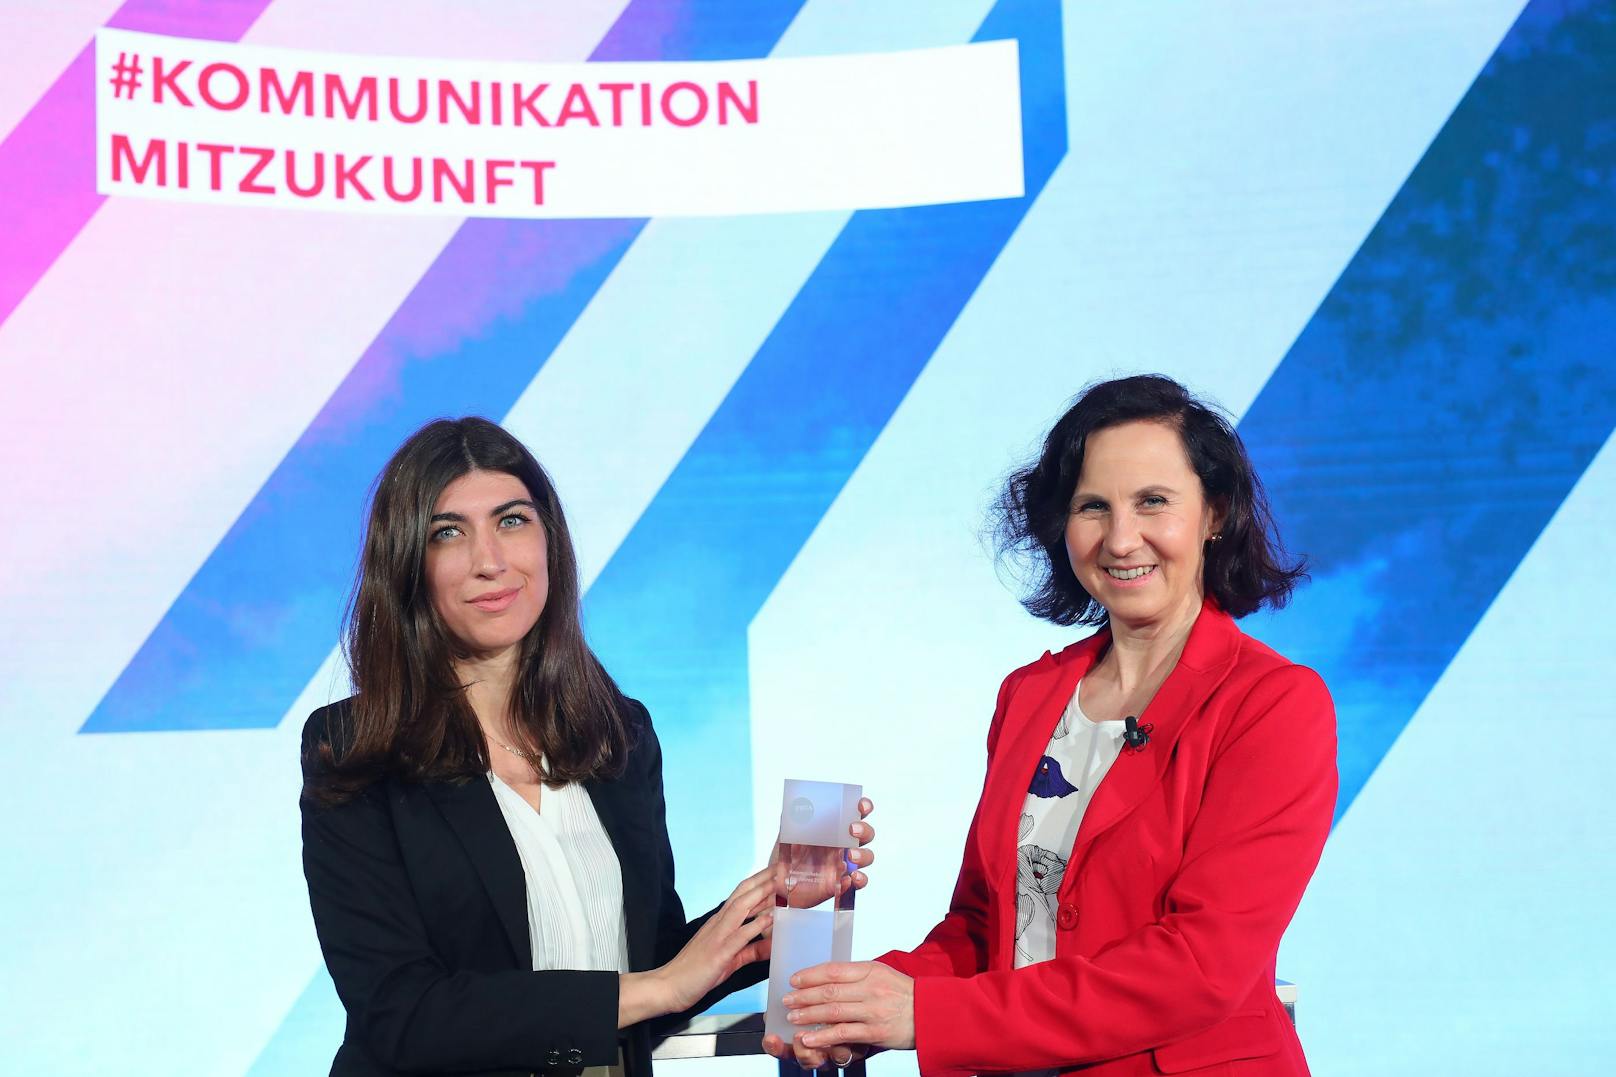  Melisa Erkurt wurde als Kommunikatorin des Jahres 2020 ausgezeichnet.